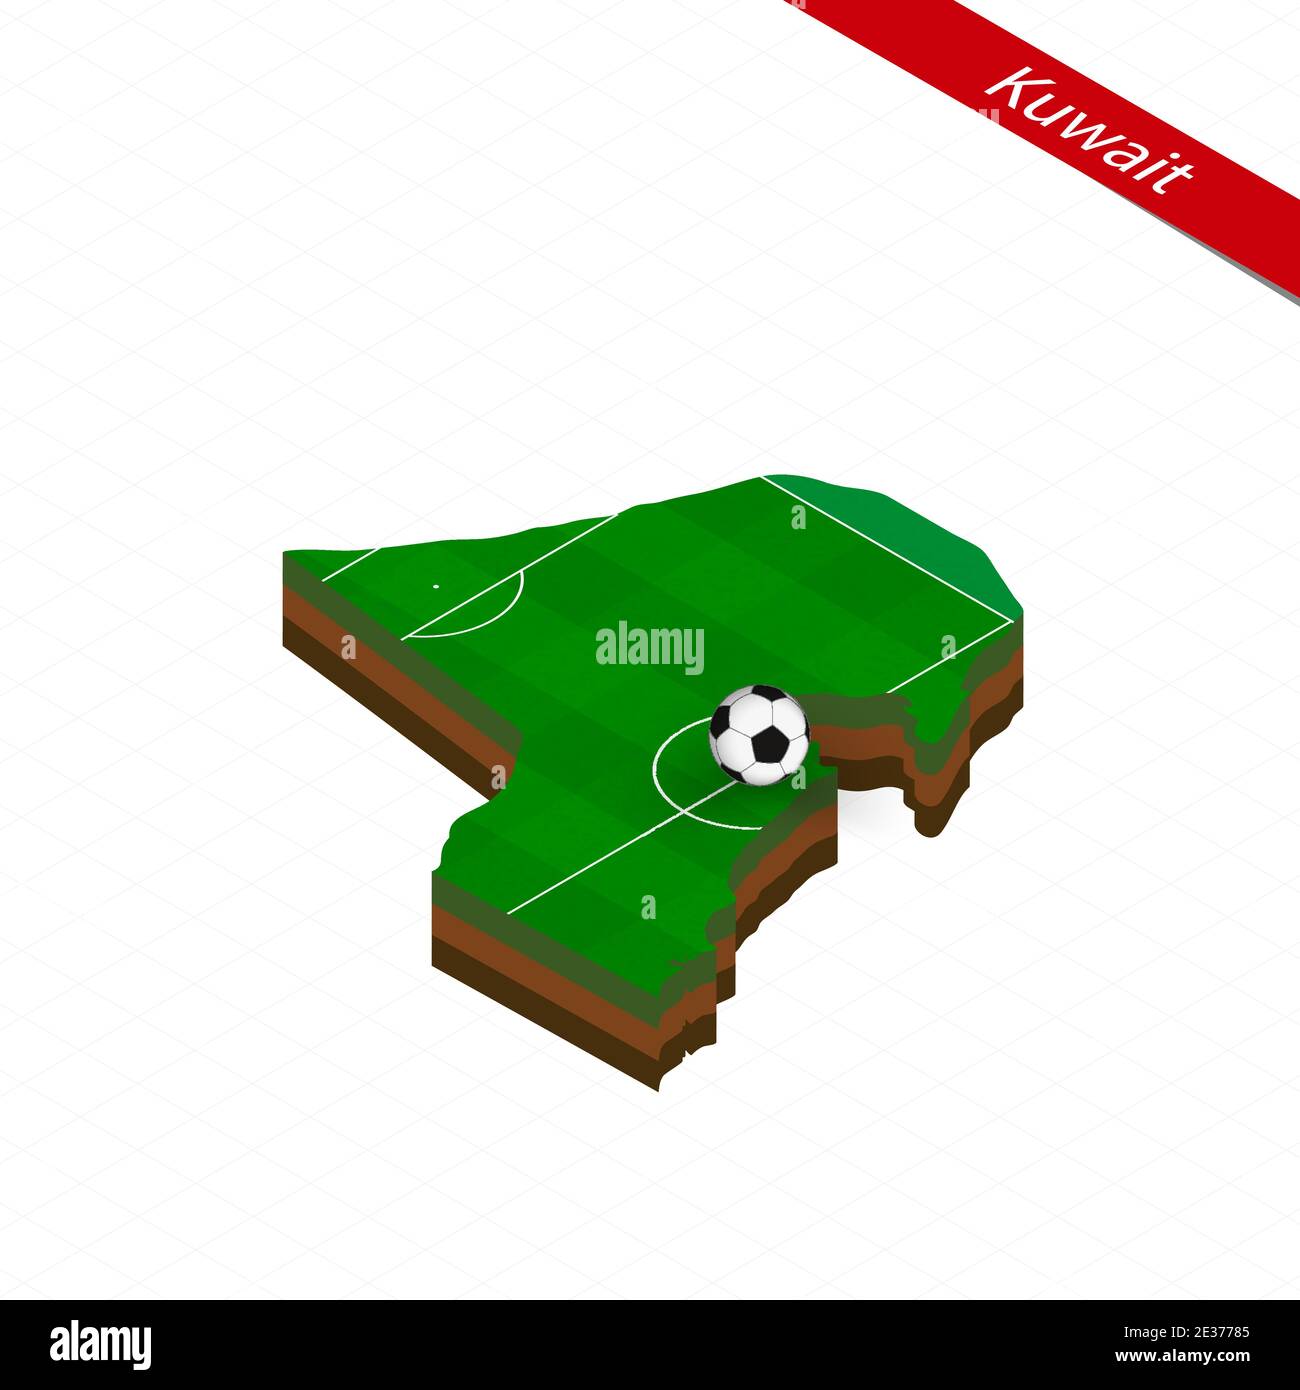 Isometrische Karte von Kuwait mit Fußballplatz. Fußball in der Mitte des Fußballplatzes. Vektorgrafik Fußball. Stock Vektor